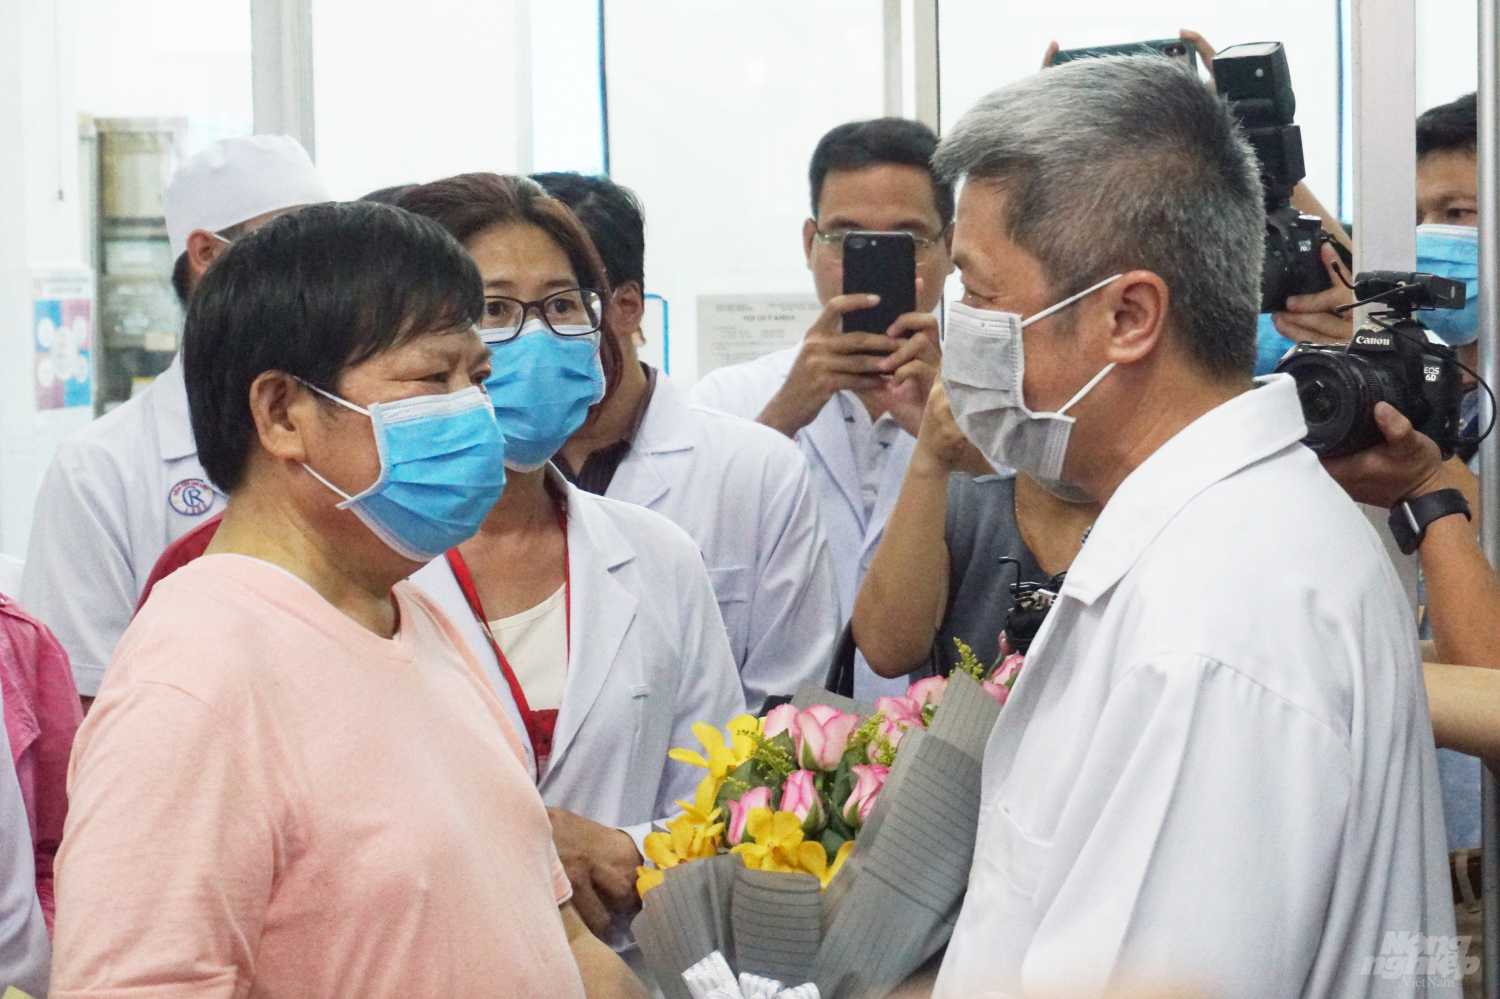 Bệnh nhân Li Ding gửi lời cám ơn tới Chính phủ Việt Nam, Bộ Y tế Việt Nam và các y bác sĩ Bệnh viện Chợ Rẫy. Ảnh: Nguyễn Thủy.